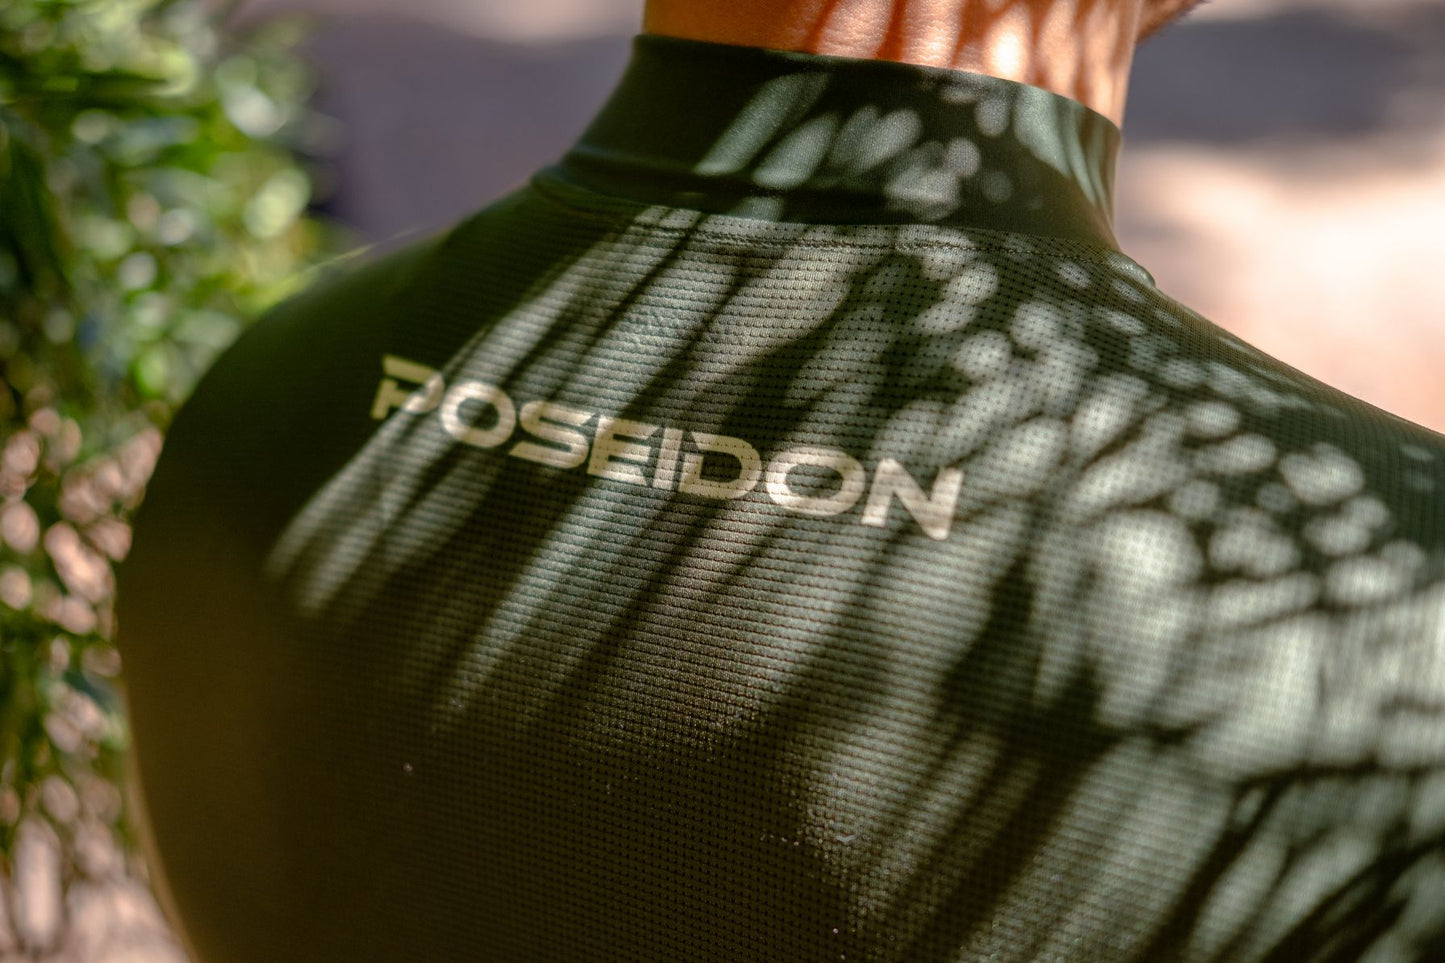 Poseidon Crest Cycling Kit